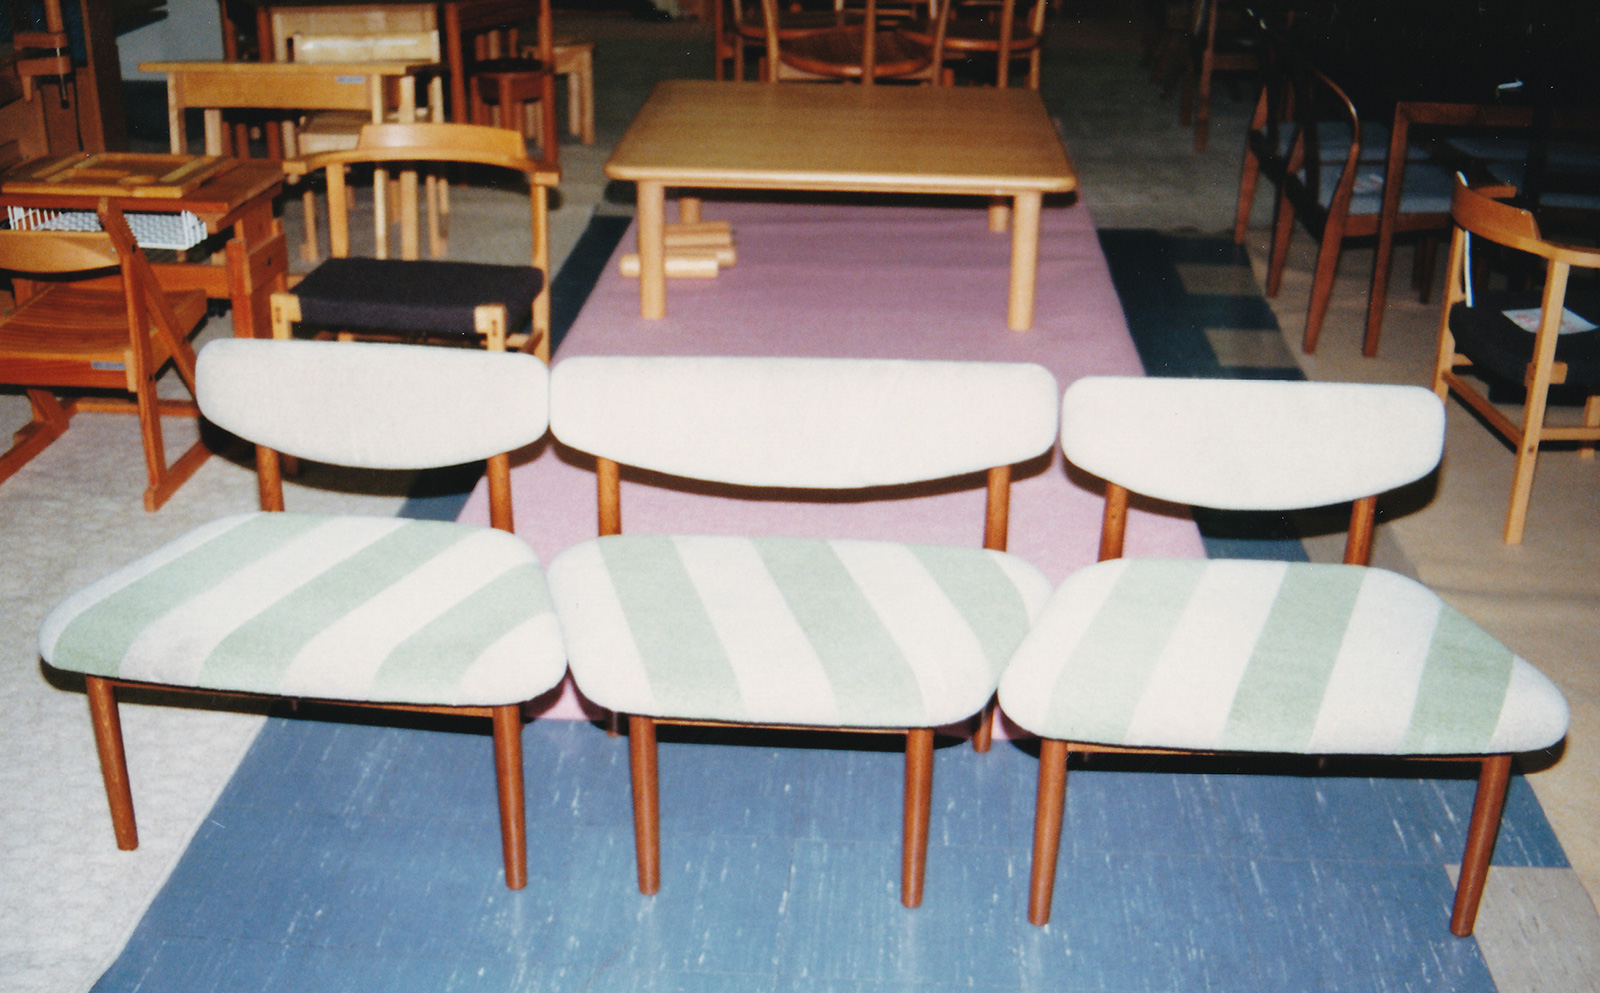 1980年(昭和55年)2月、秋岡氏との打ち合わせに使われた「畳椅子(連結椅子)」。